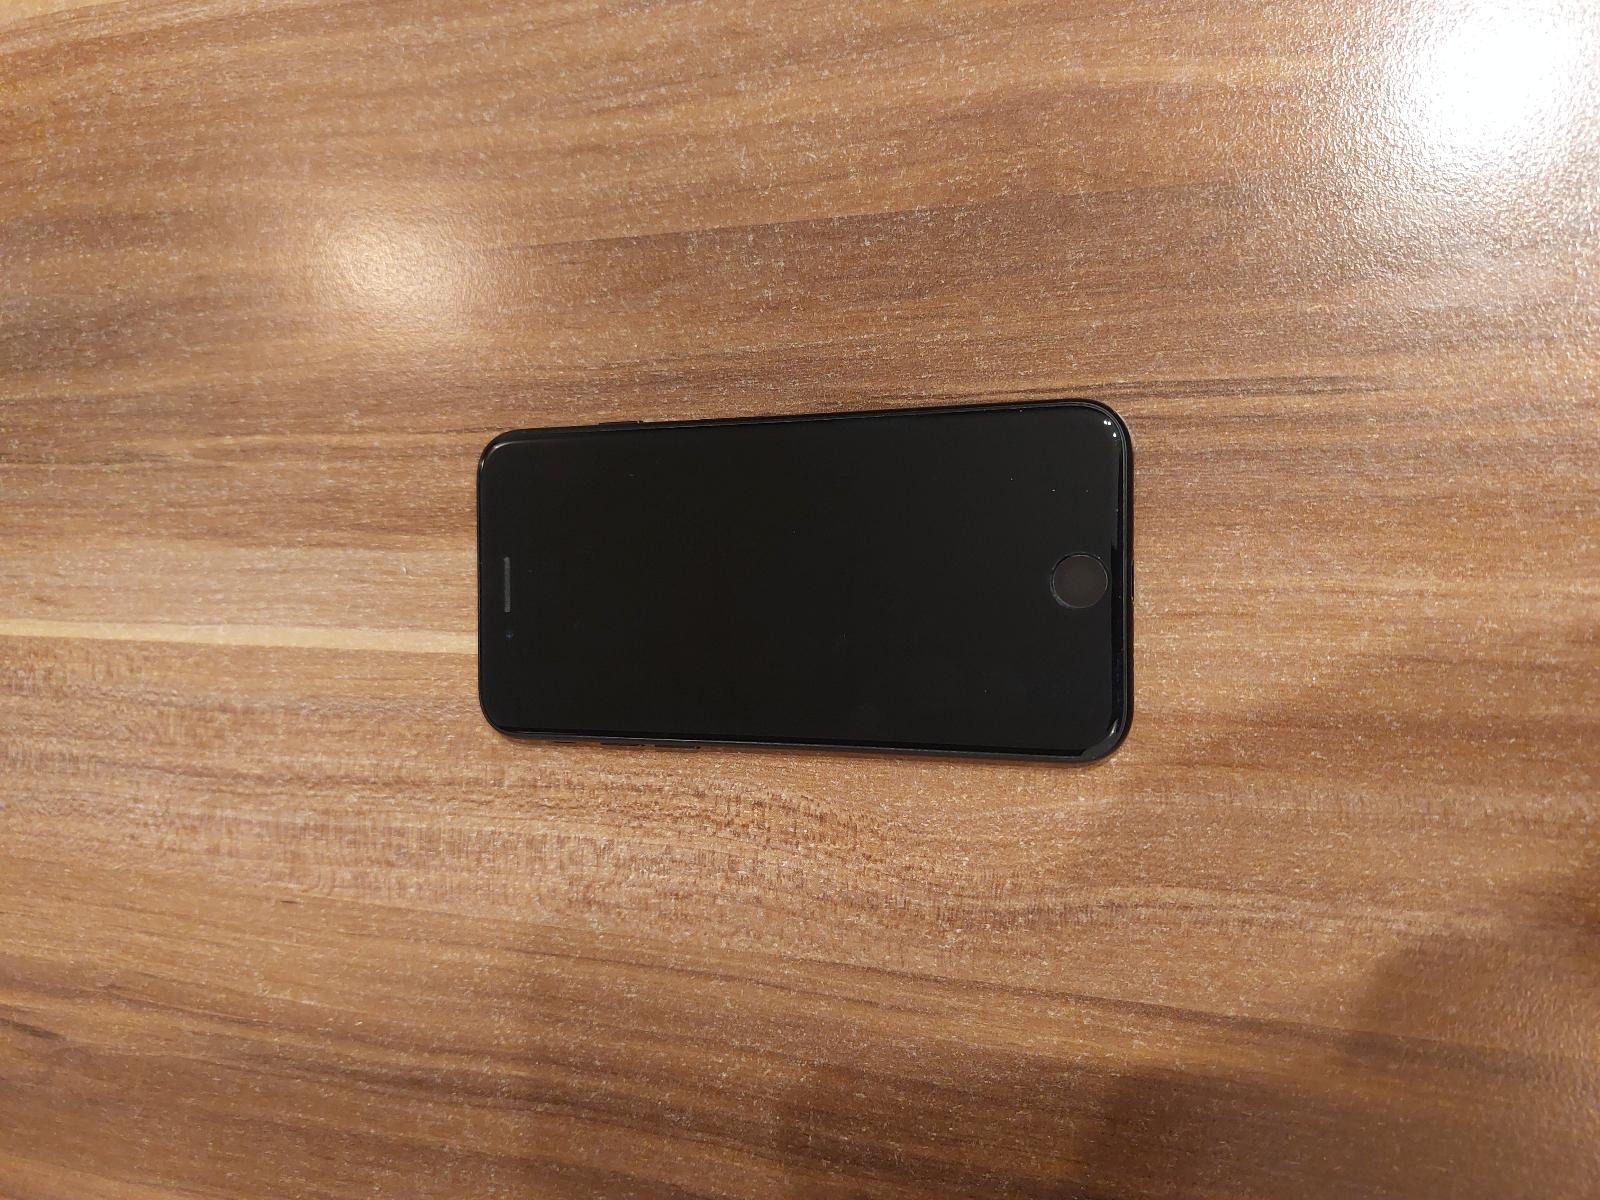 iPhone 7 32gb černý s kryty a sklíčky - Mobily a chytrá elektronika